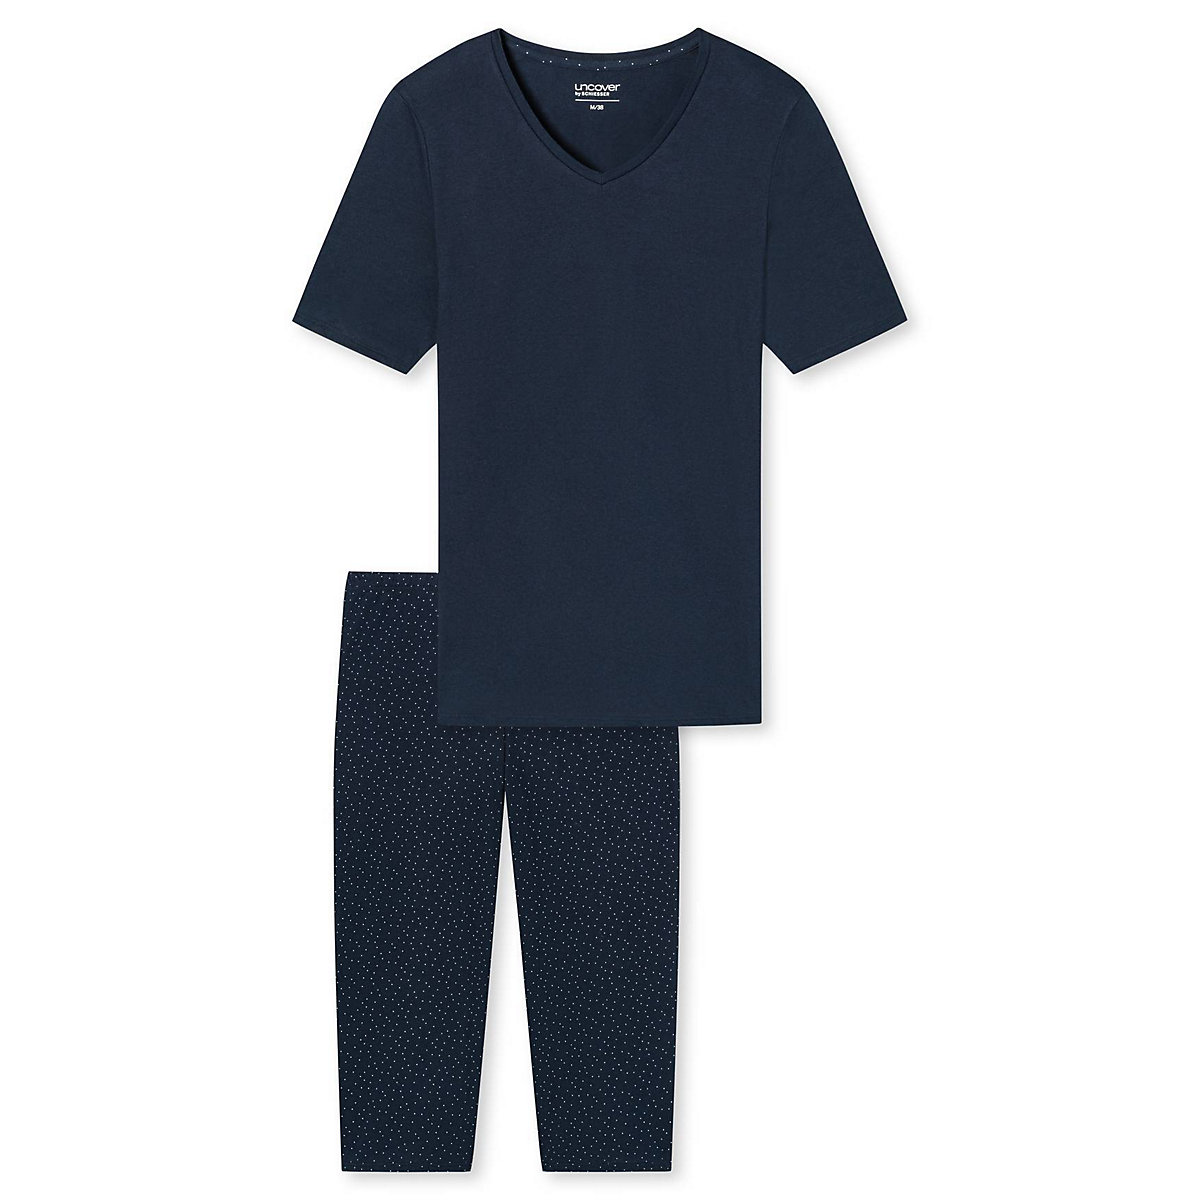 uncover by SCHIESSER Damen Schlafanzug Set kurz 2-tlg. 1/2 Arm 3/4 Hose V-Ausschnitt Pyjamahosen dunkelblau